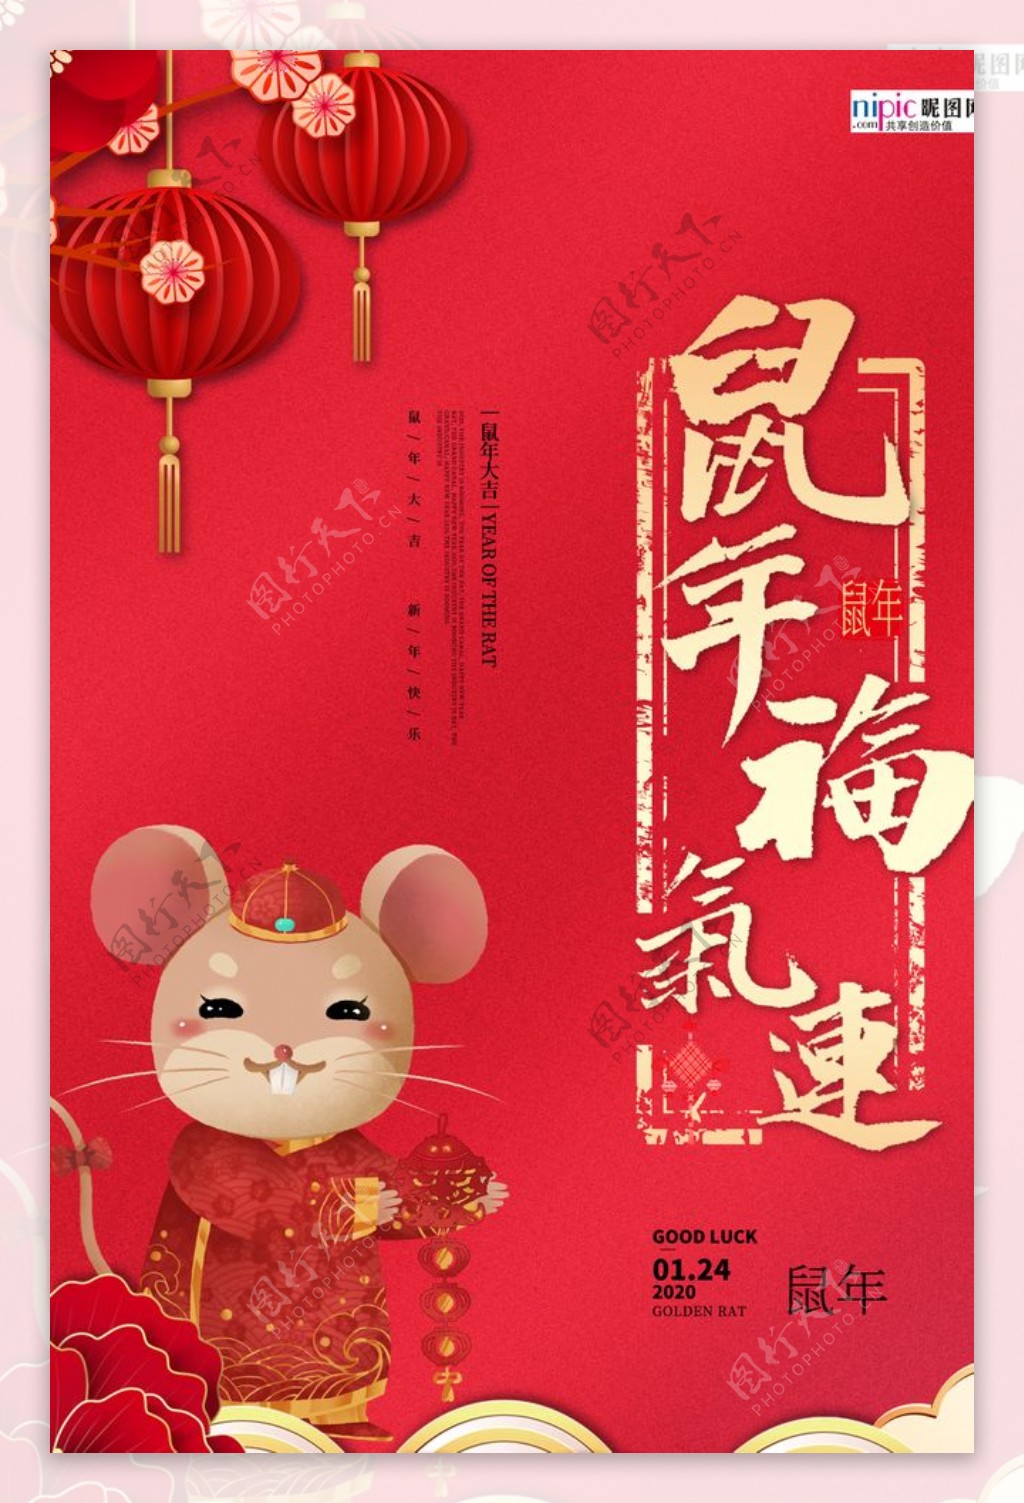 鼠年红色大气鼠年送福宣传海报